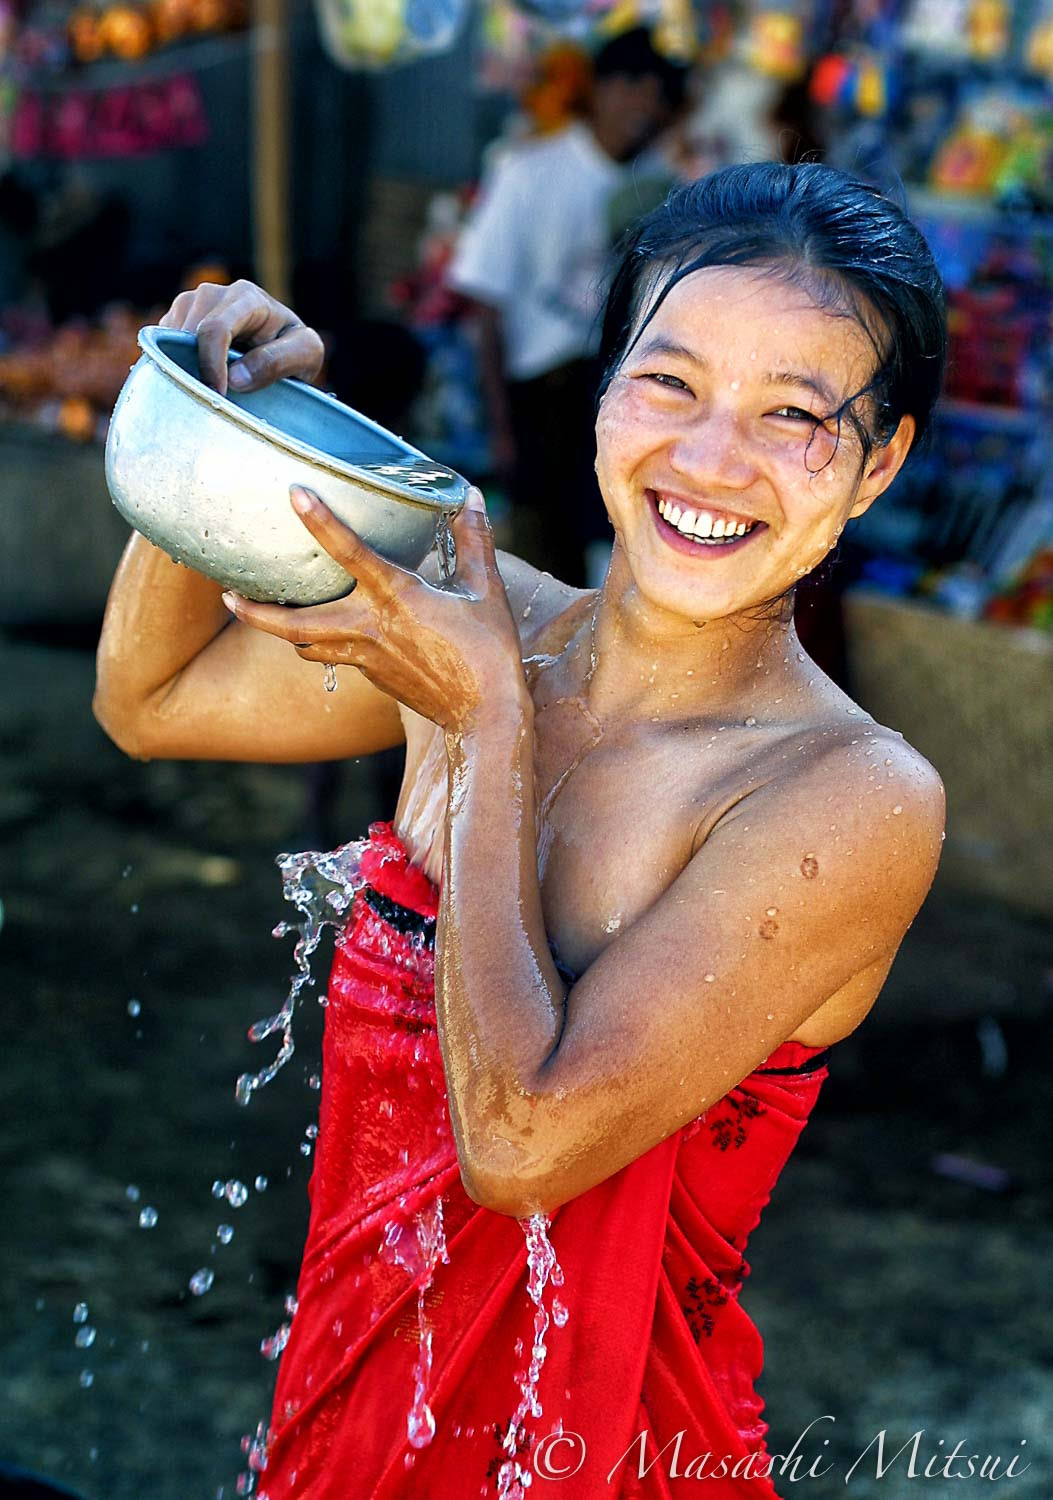 ラブリー ミャンマー 人 美人 画像美しさランキング